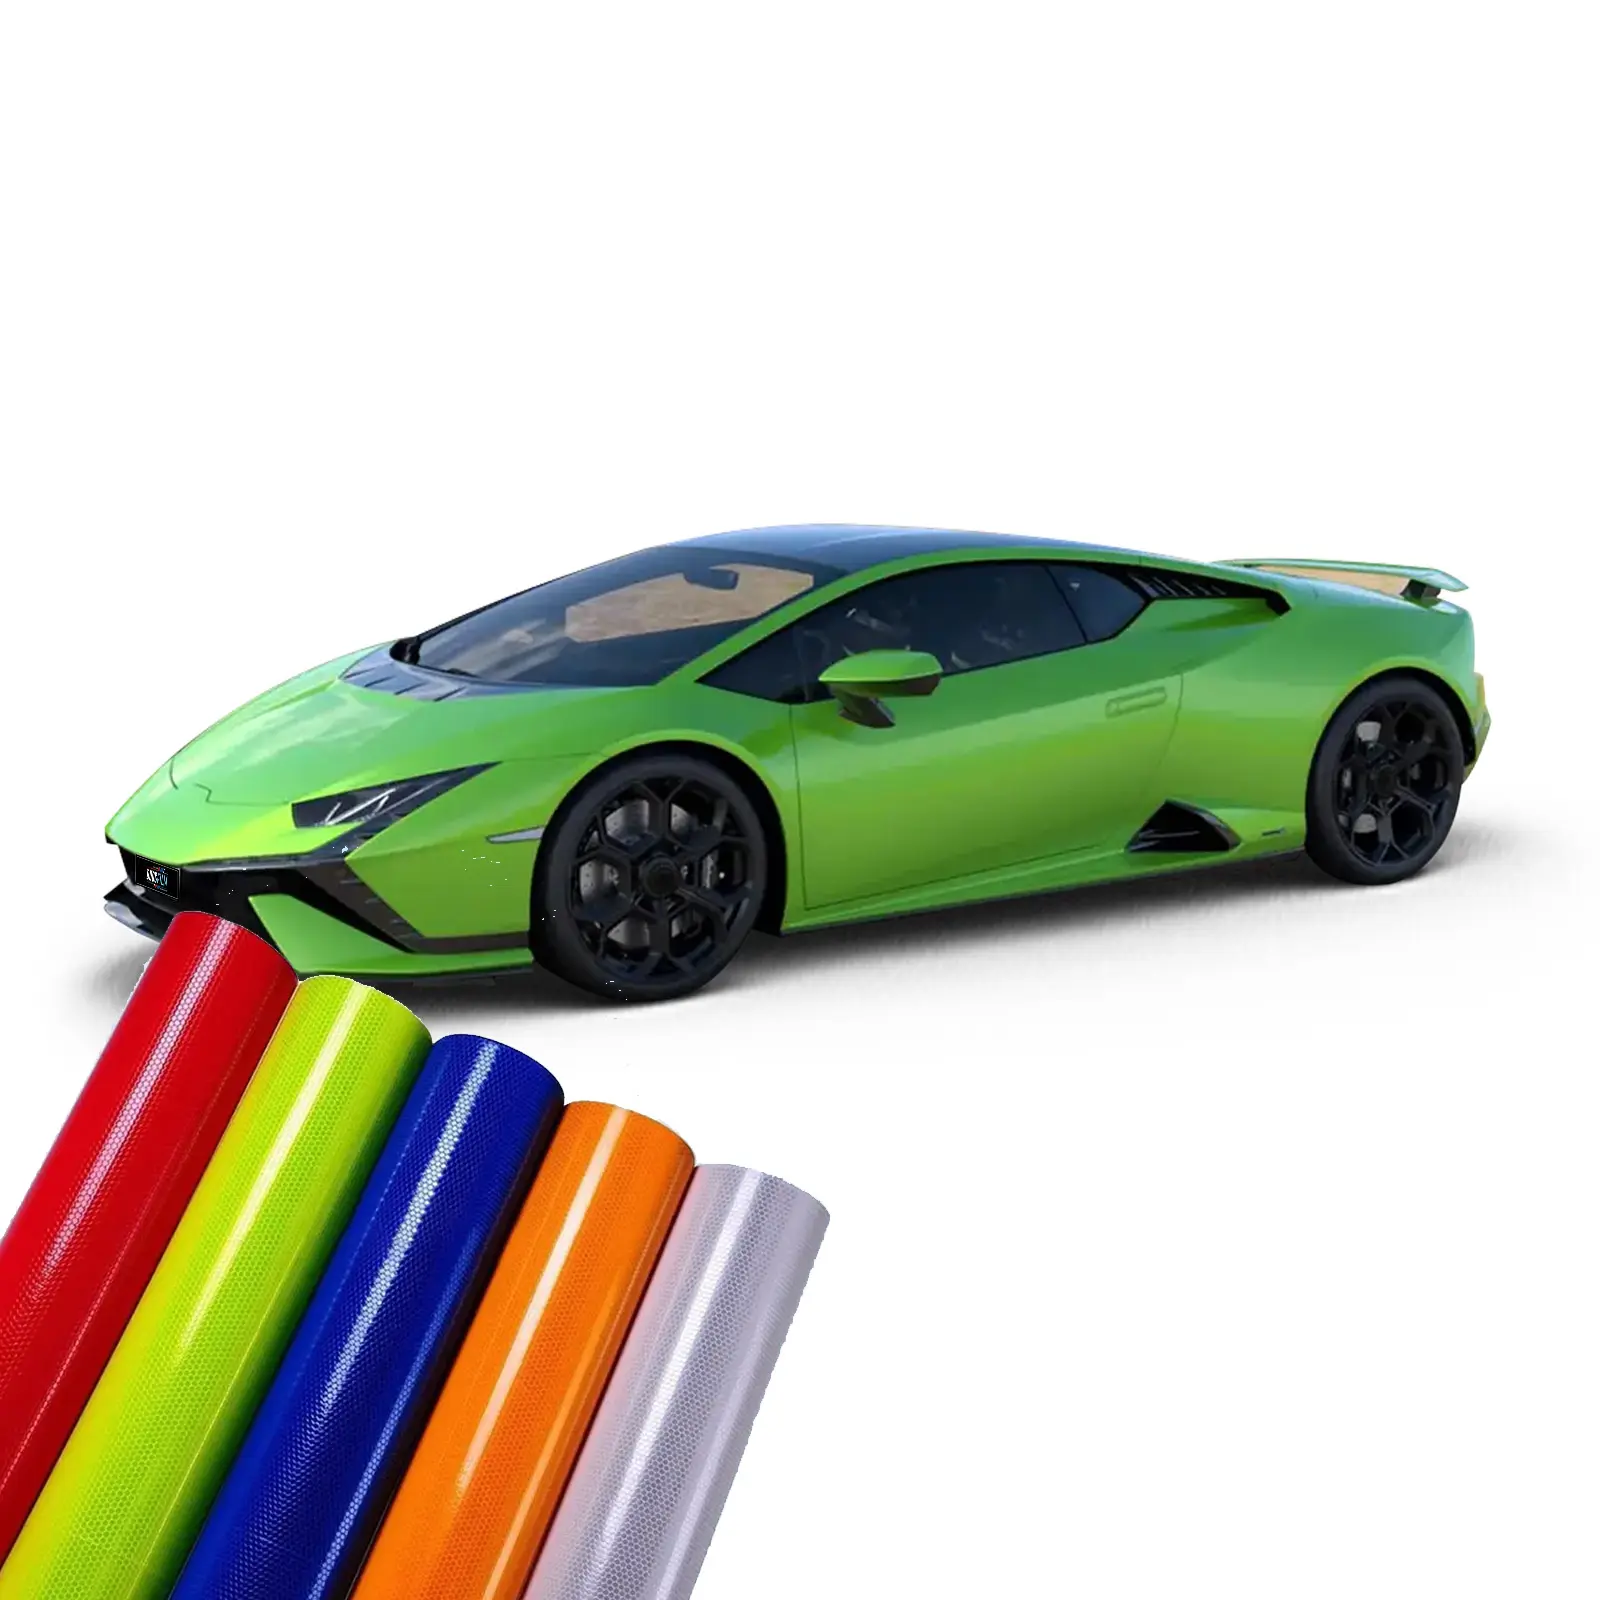 Emballage de changement de couleur d'usine OEM pour l'entretien des voitures Films à changement de couleur pour la carrosserie Film de changement de couleur en pvc rouleau de vinyle cristal satiné mat